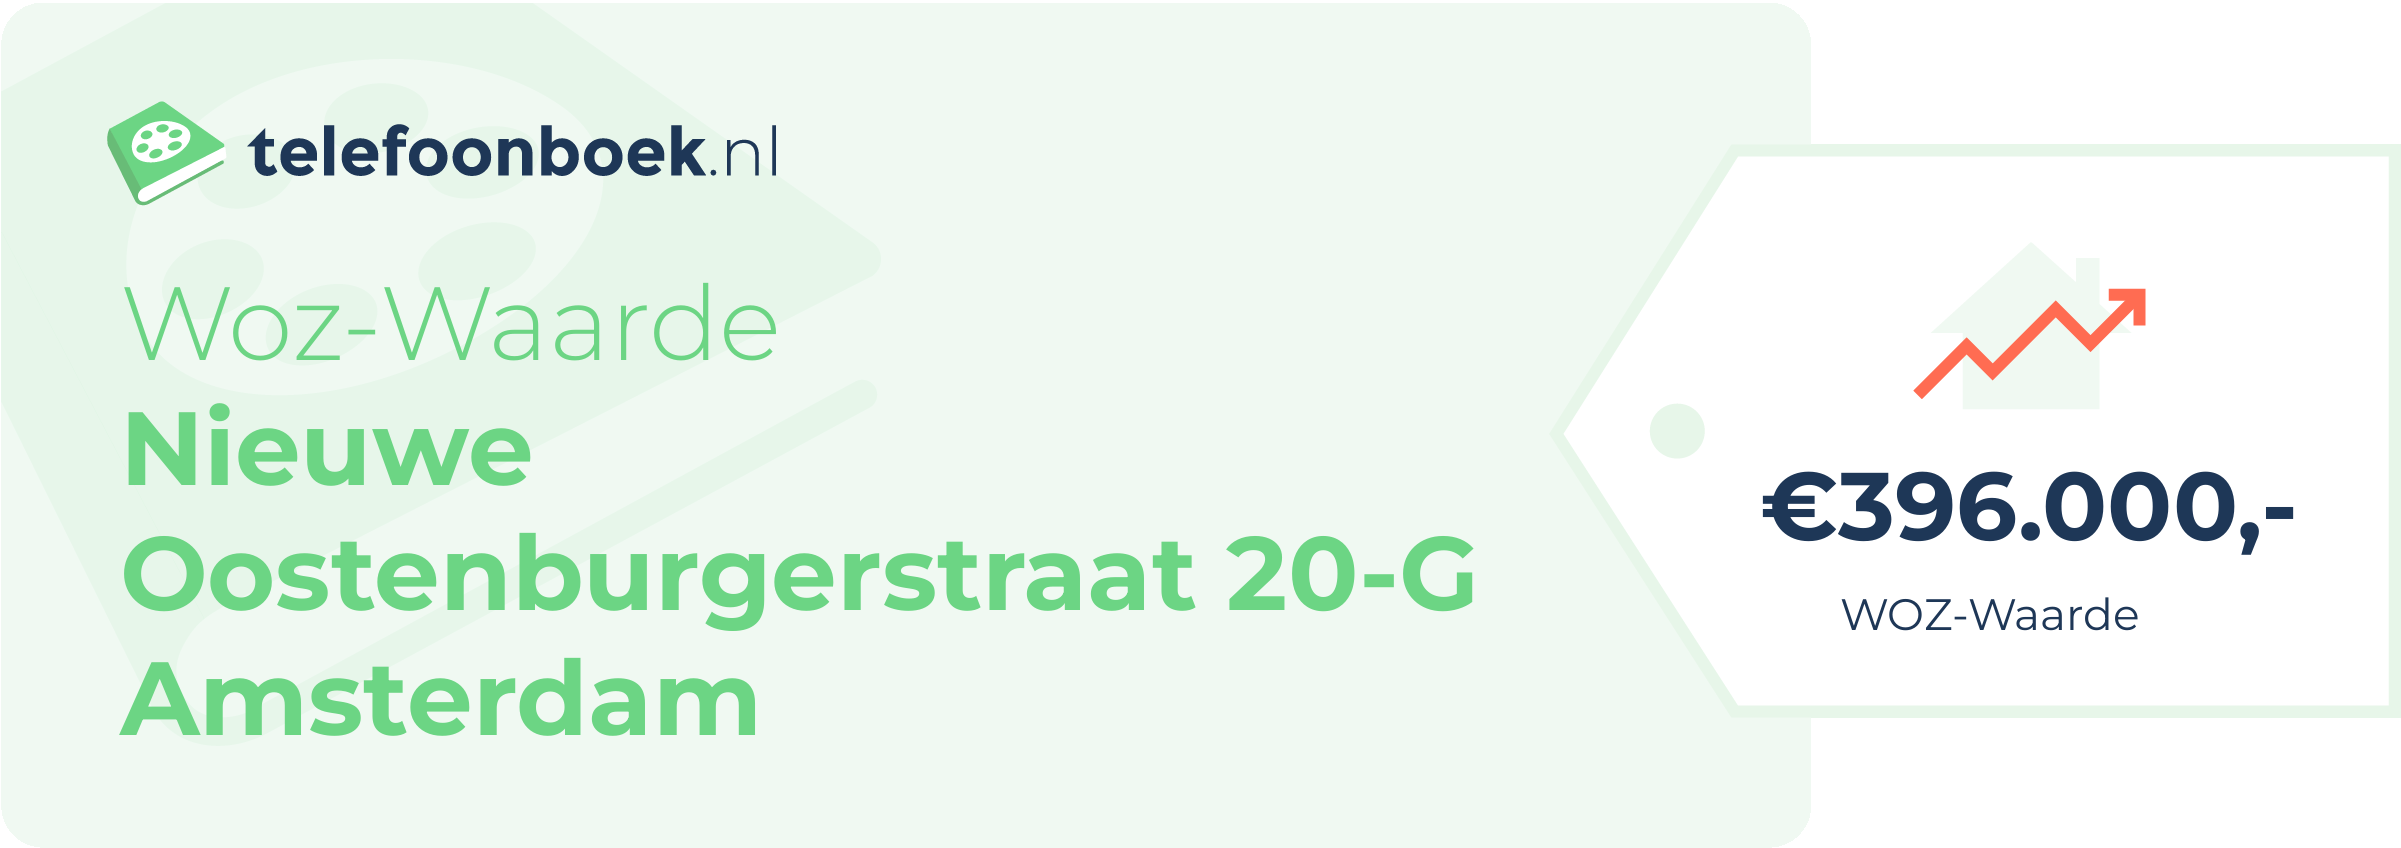 WOZ-waarde Nieuwe Oostenburgerstraat 20-G Amsterdam